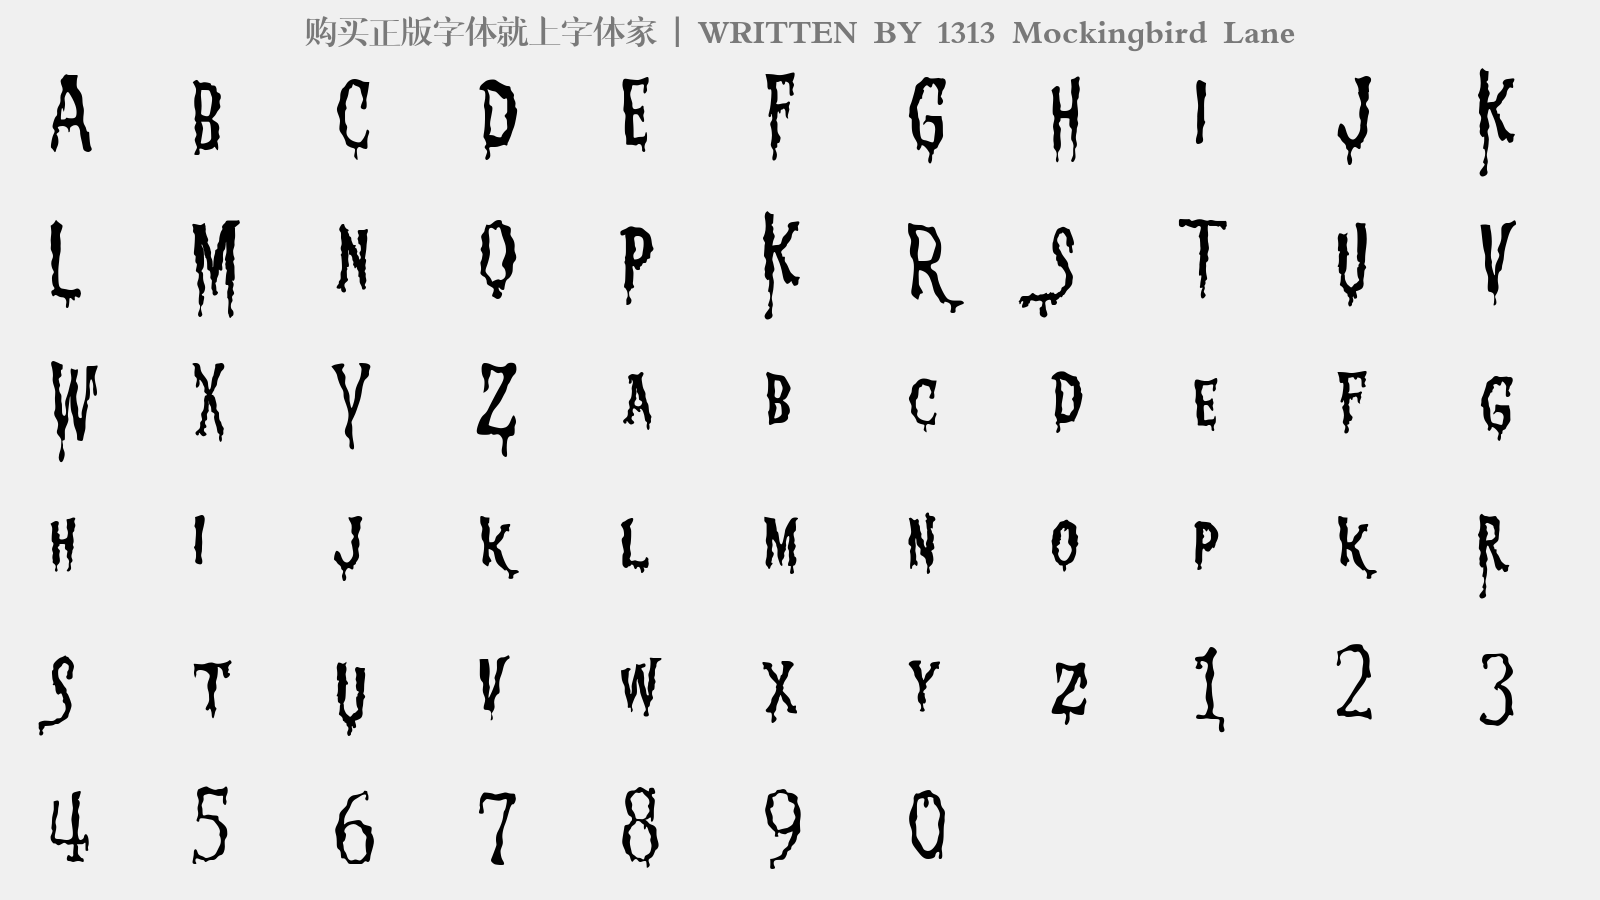 1313 Mockingbird Lane - 大写字母/小写字母/数字